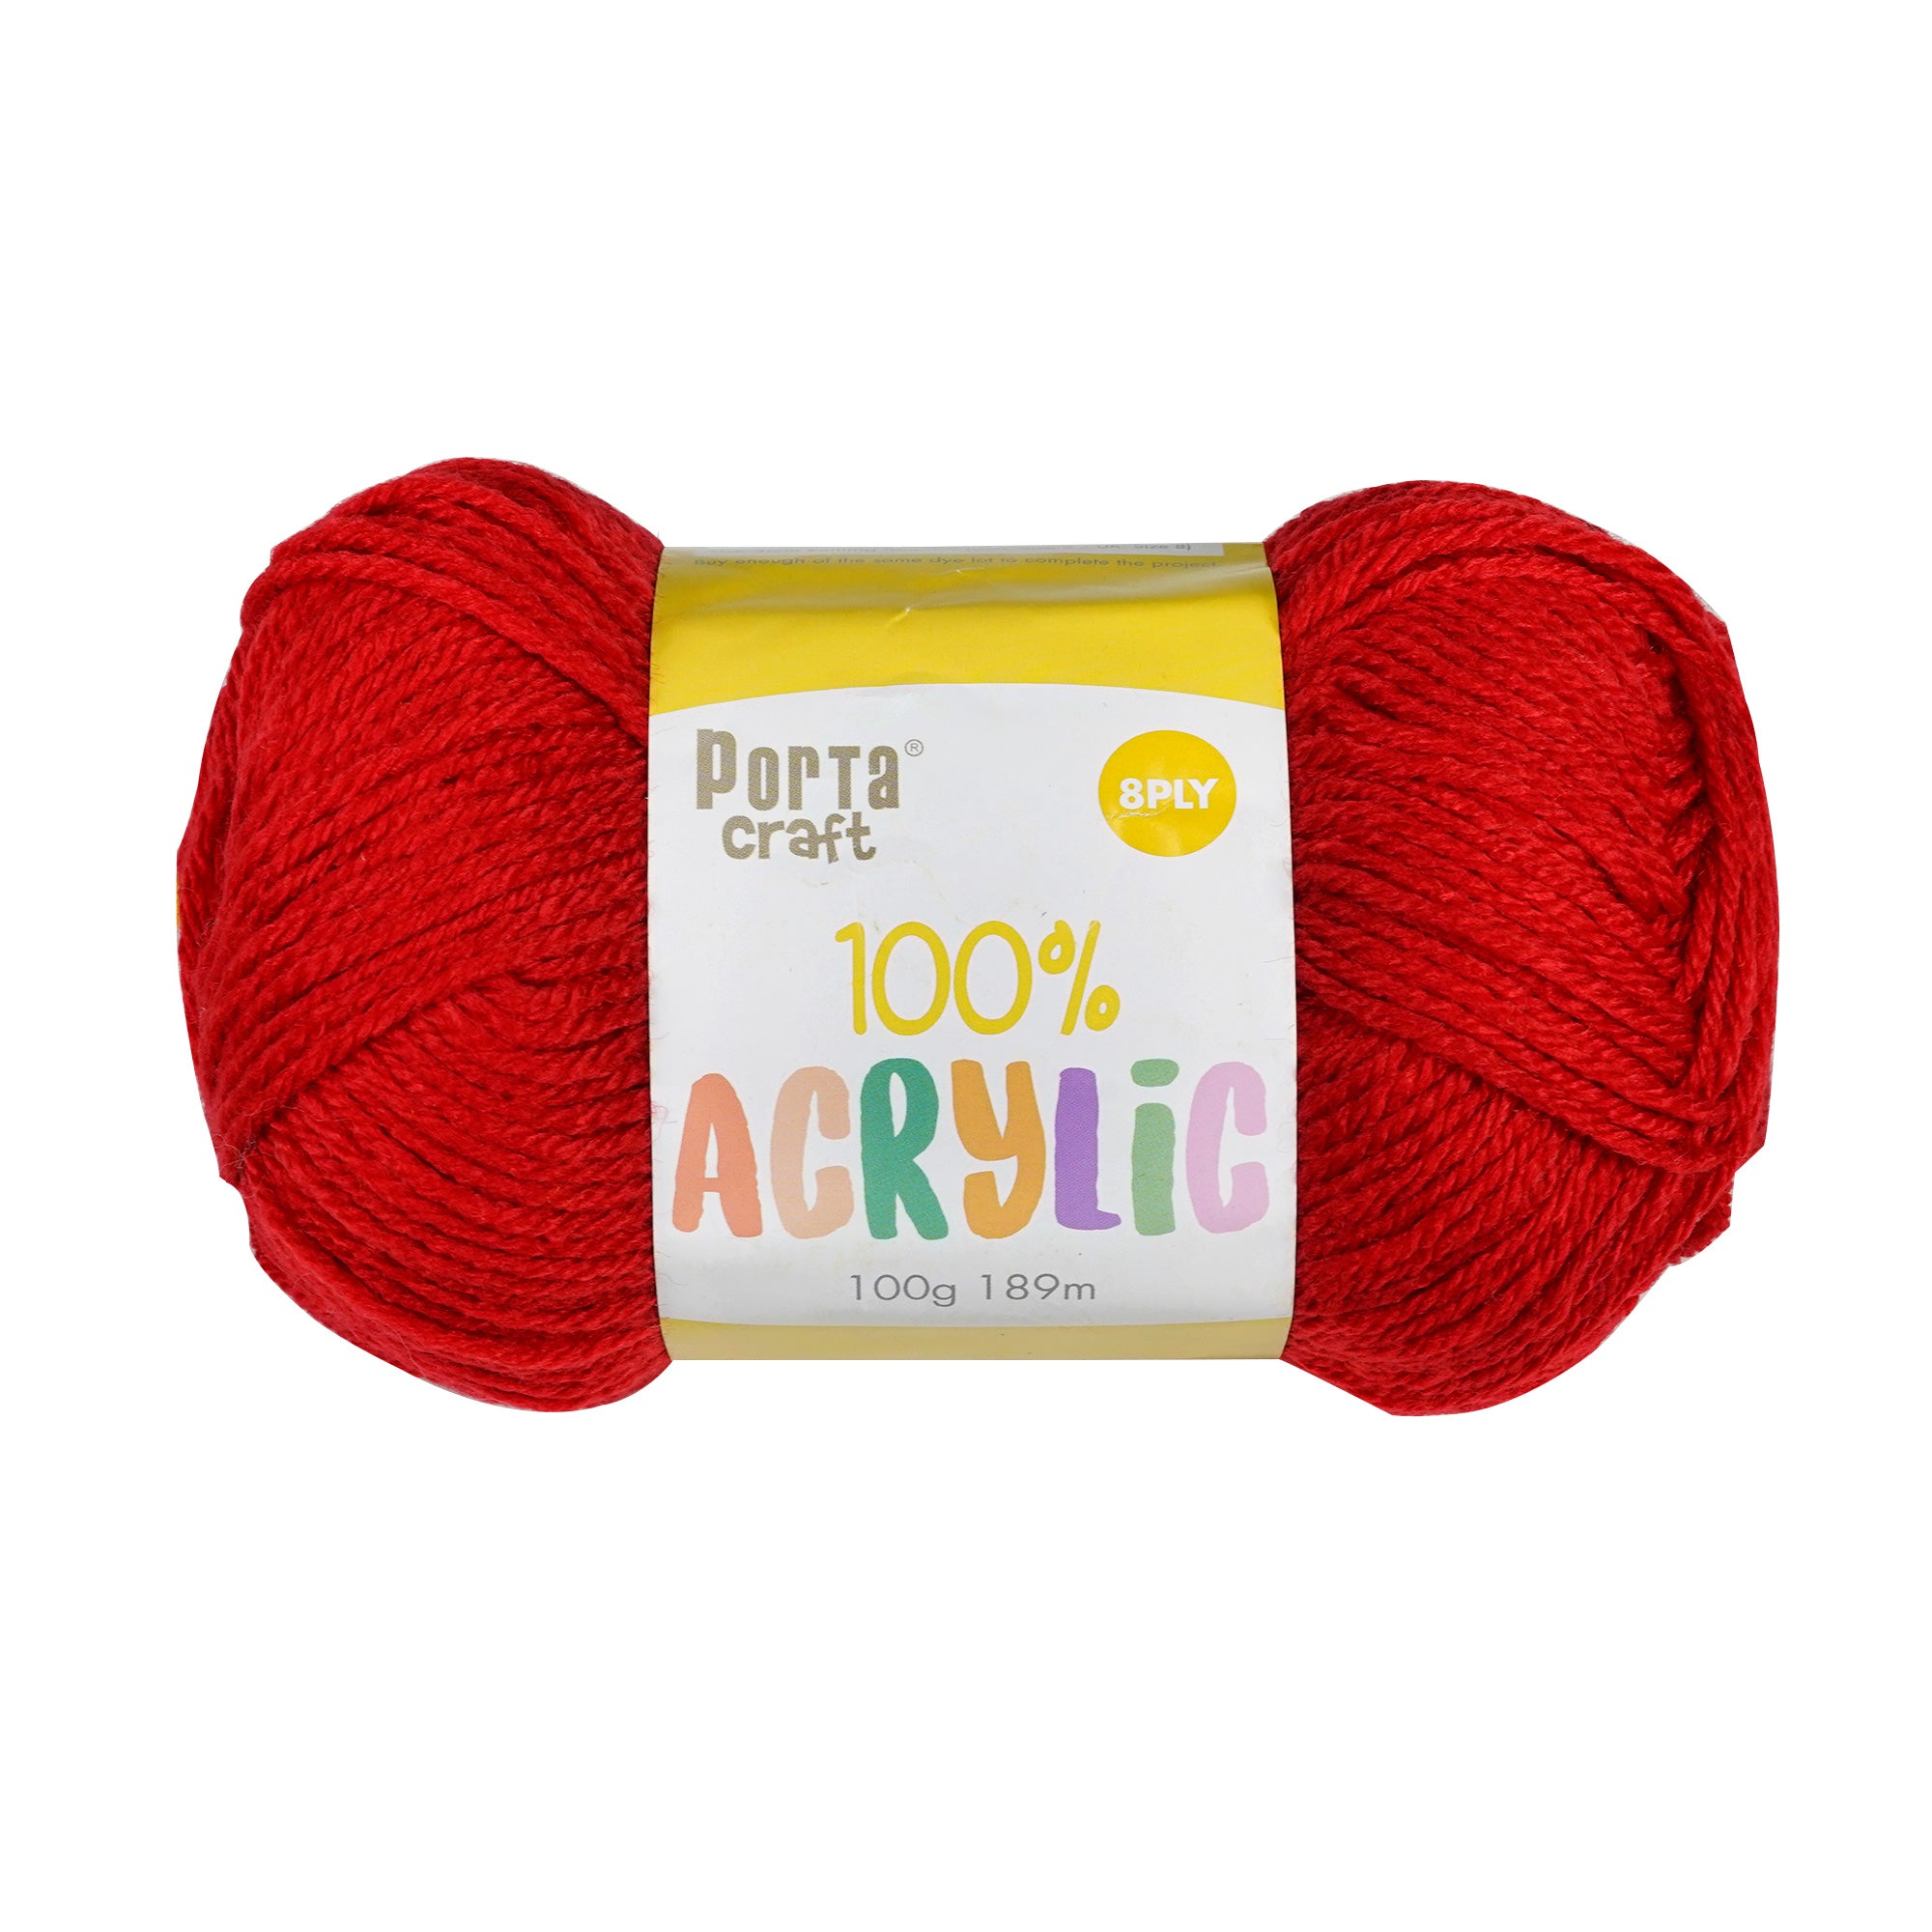 Porta Craft Acrylic Yarn 100% 100Gm 189M 8Ply Multi Sea Shimmer